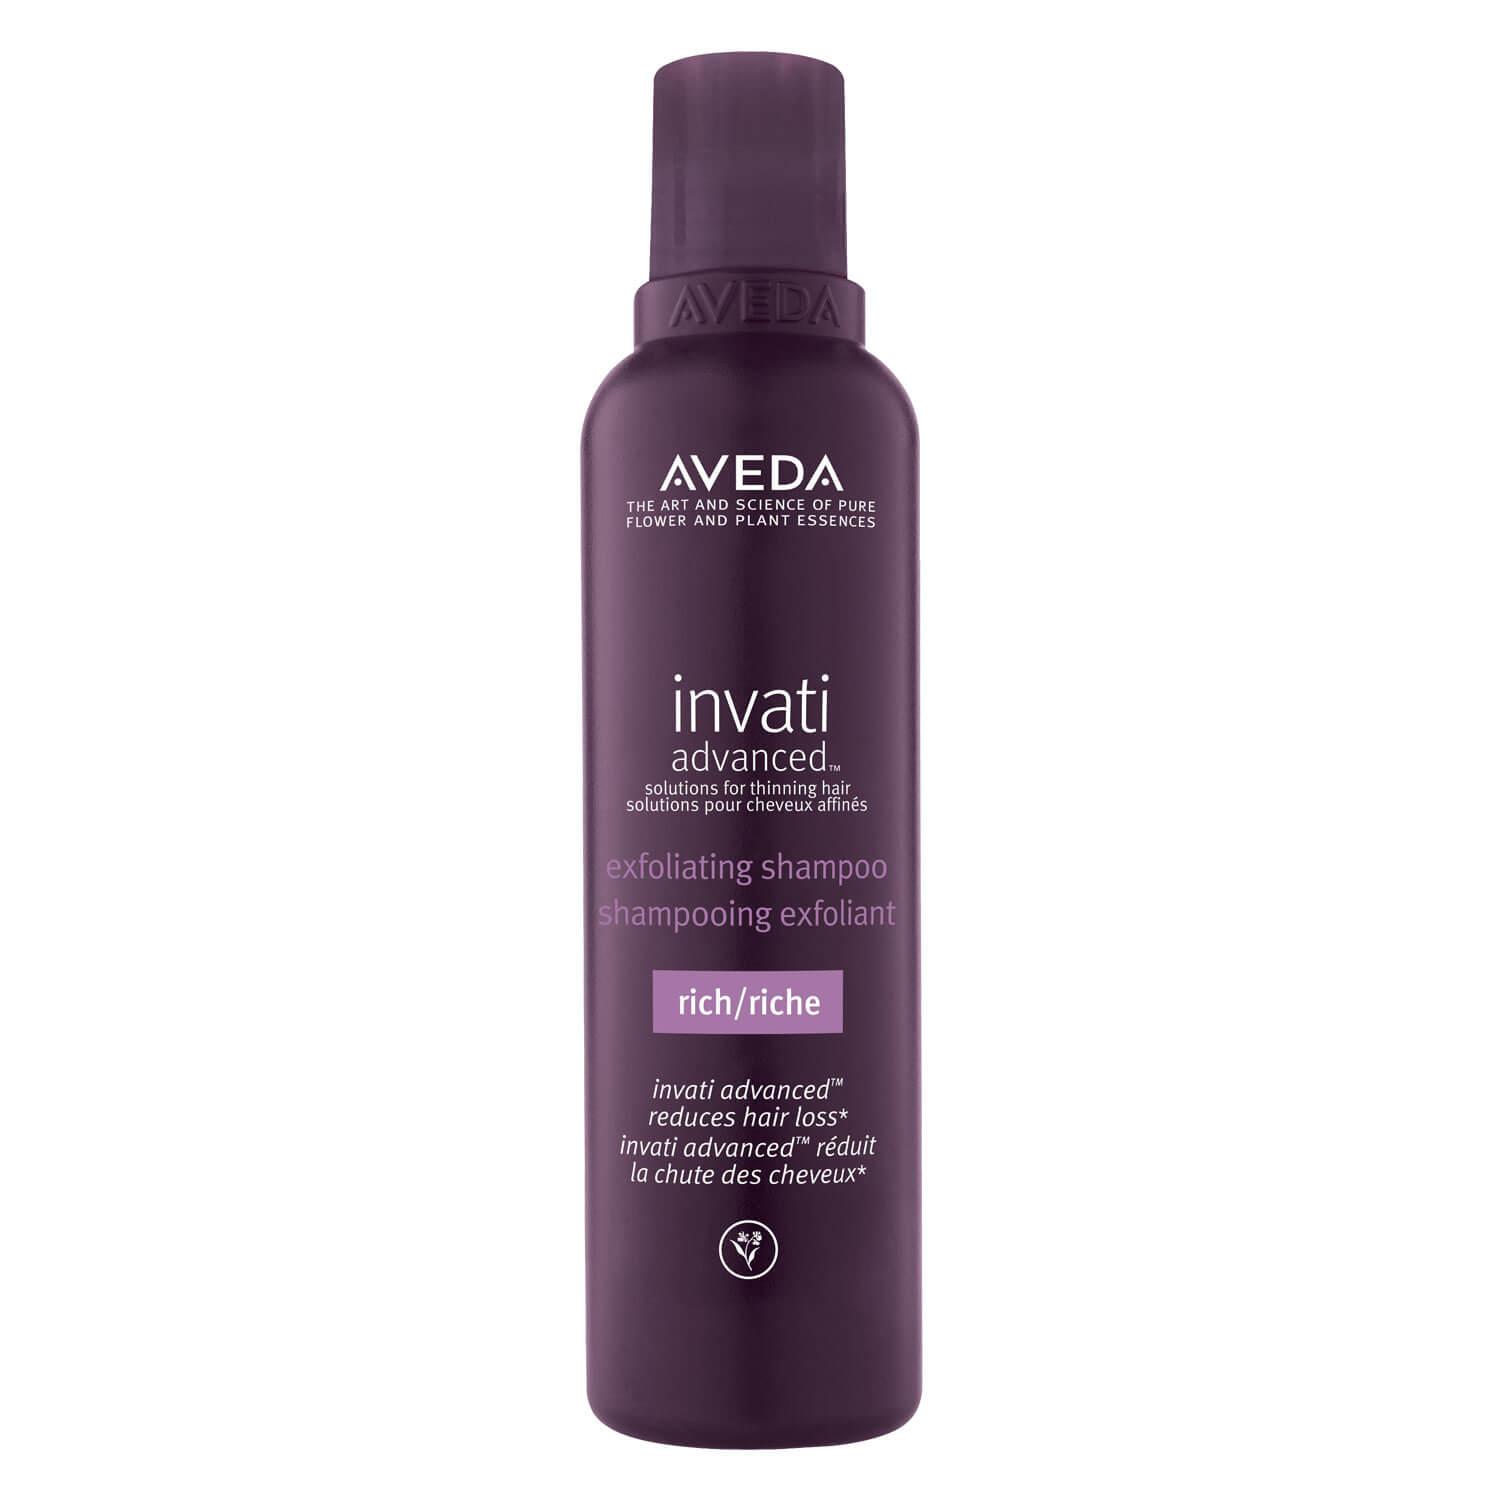 invati advanced - exfoliating shampoo rich